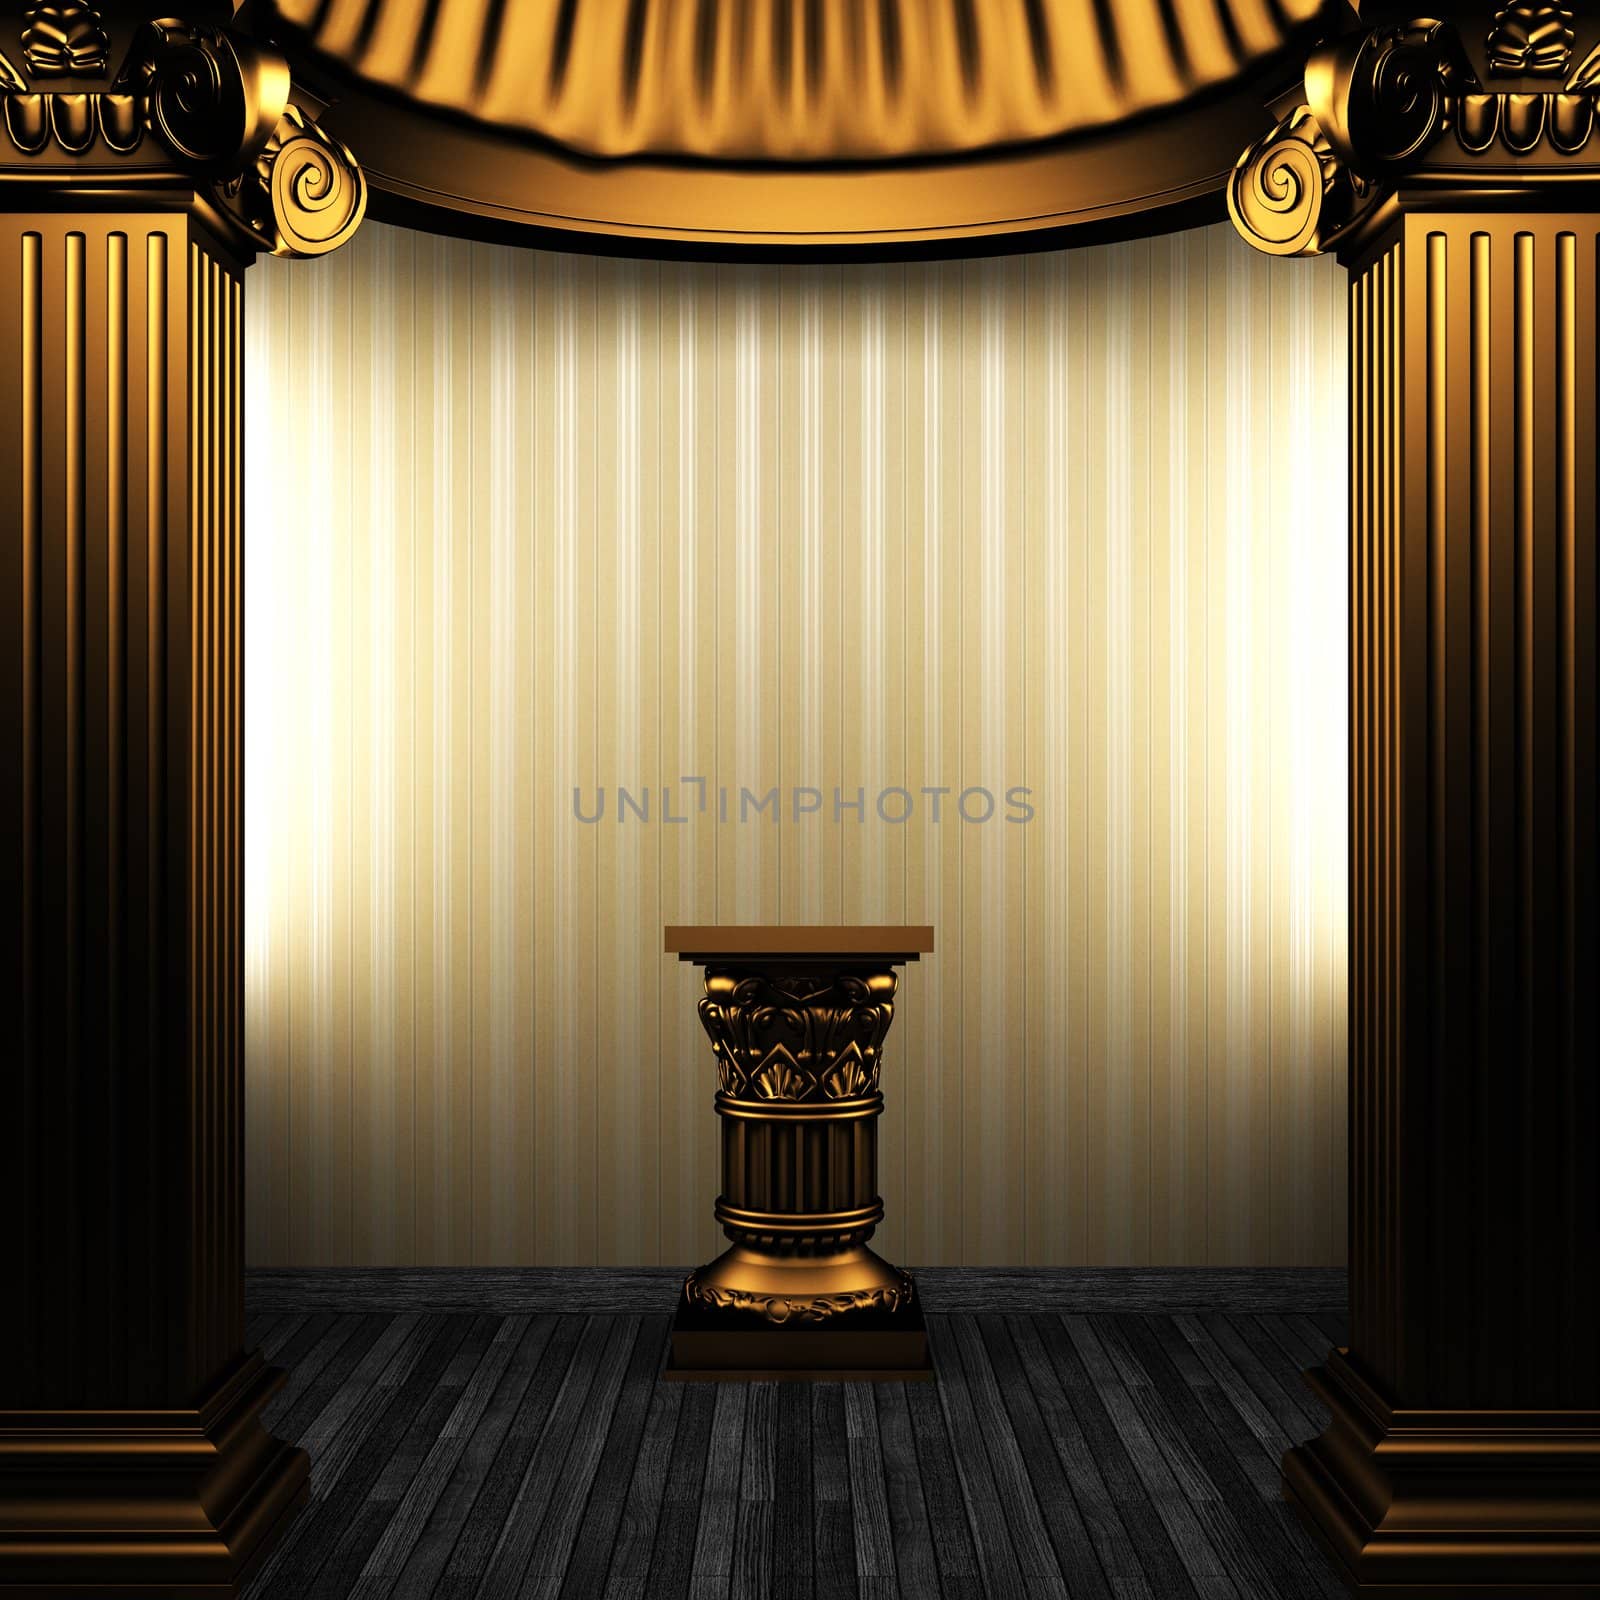 bronze columns, pedestal and wallpaper made in 3D